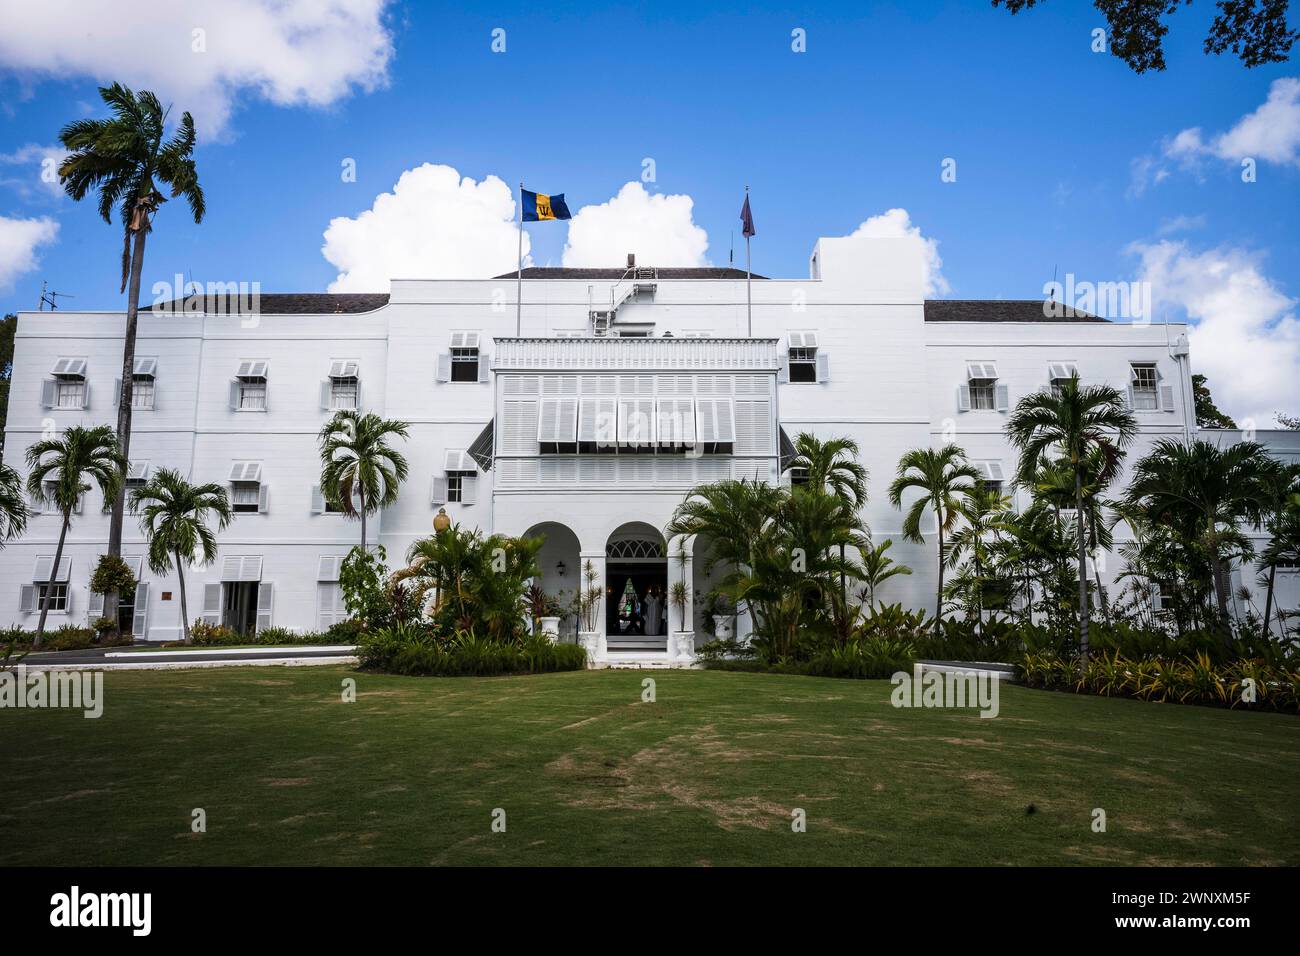 Das Barbadian State House, auch bekannt als Government House. Das 1755 erbaute Herrenhaus aus dem 18. Jahrhundert ist die offizielle Residenz des Präsidenten von Barbados. Stockfoto